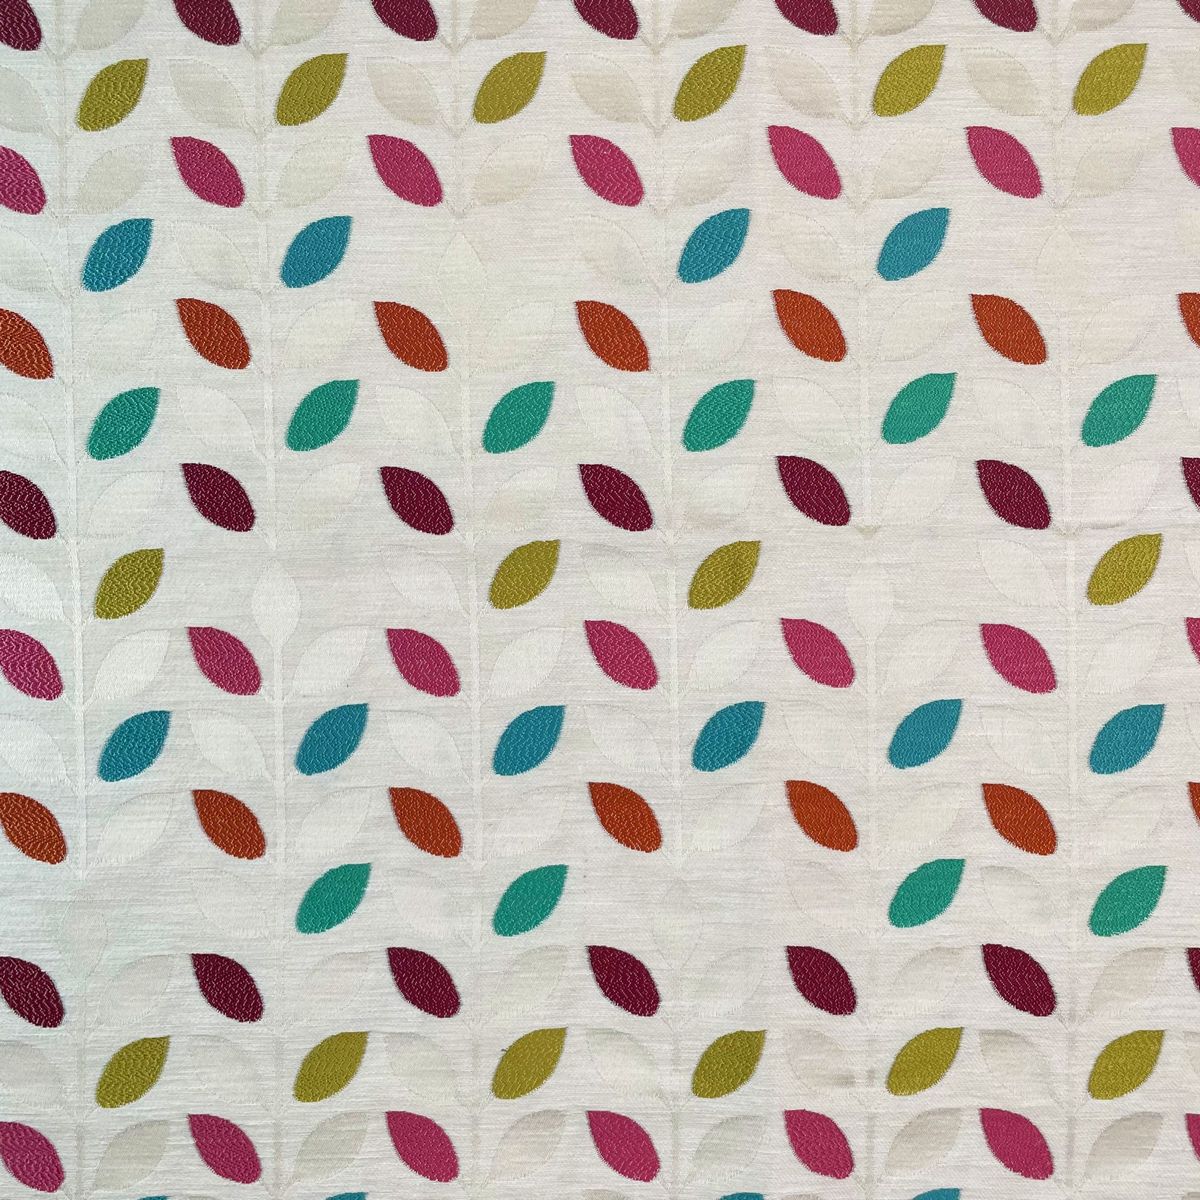 Rio Tutti Frutti Fabric by Chatham Glyn